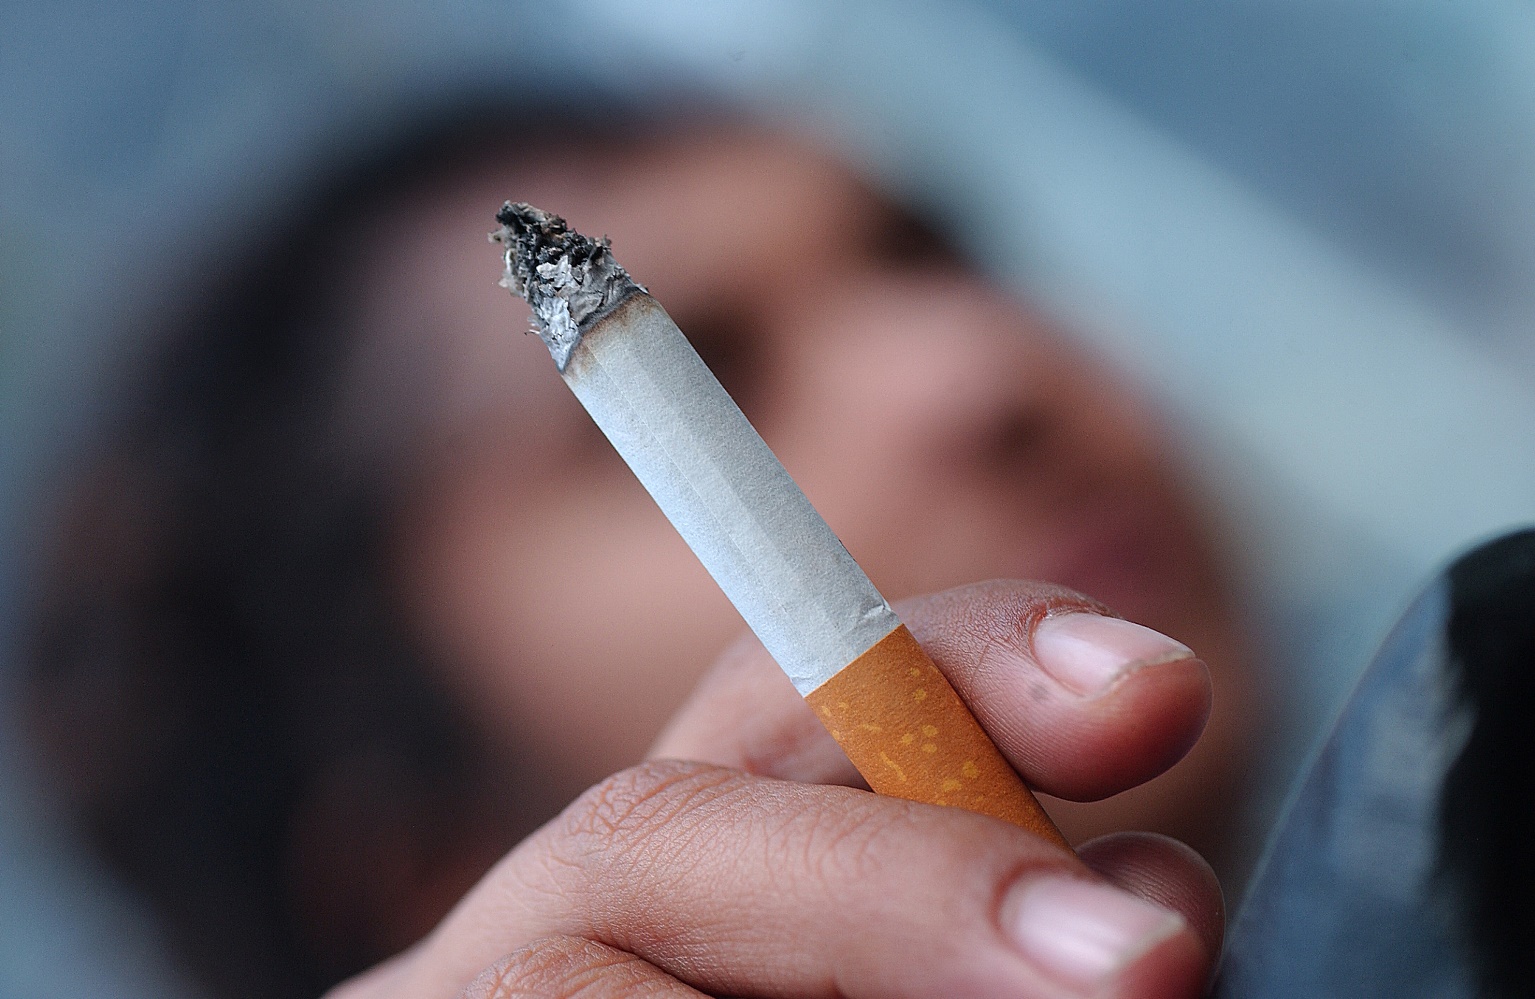 Los hispanos son menos propensos a dejar de fumar, estudio